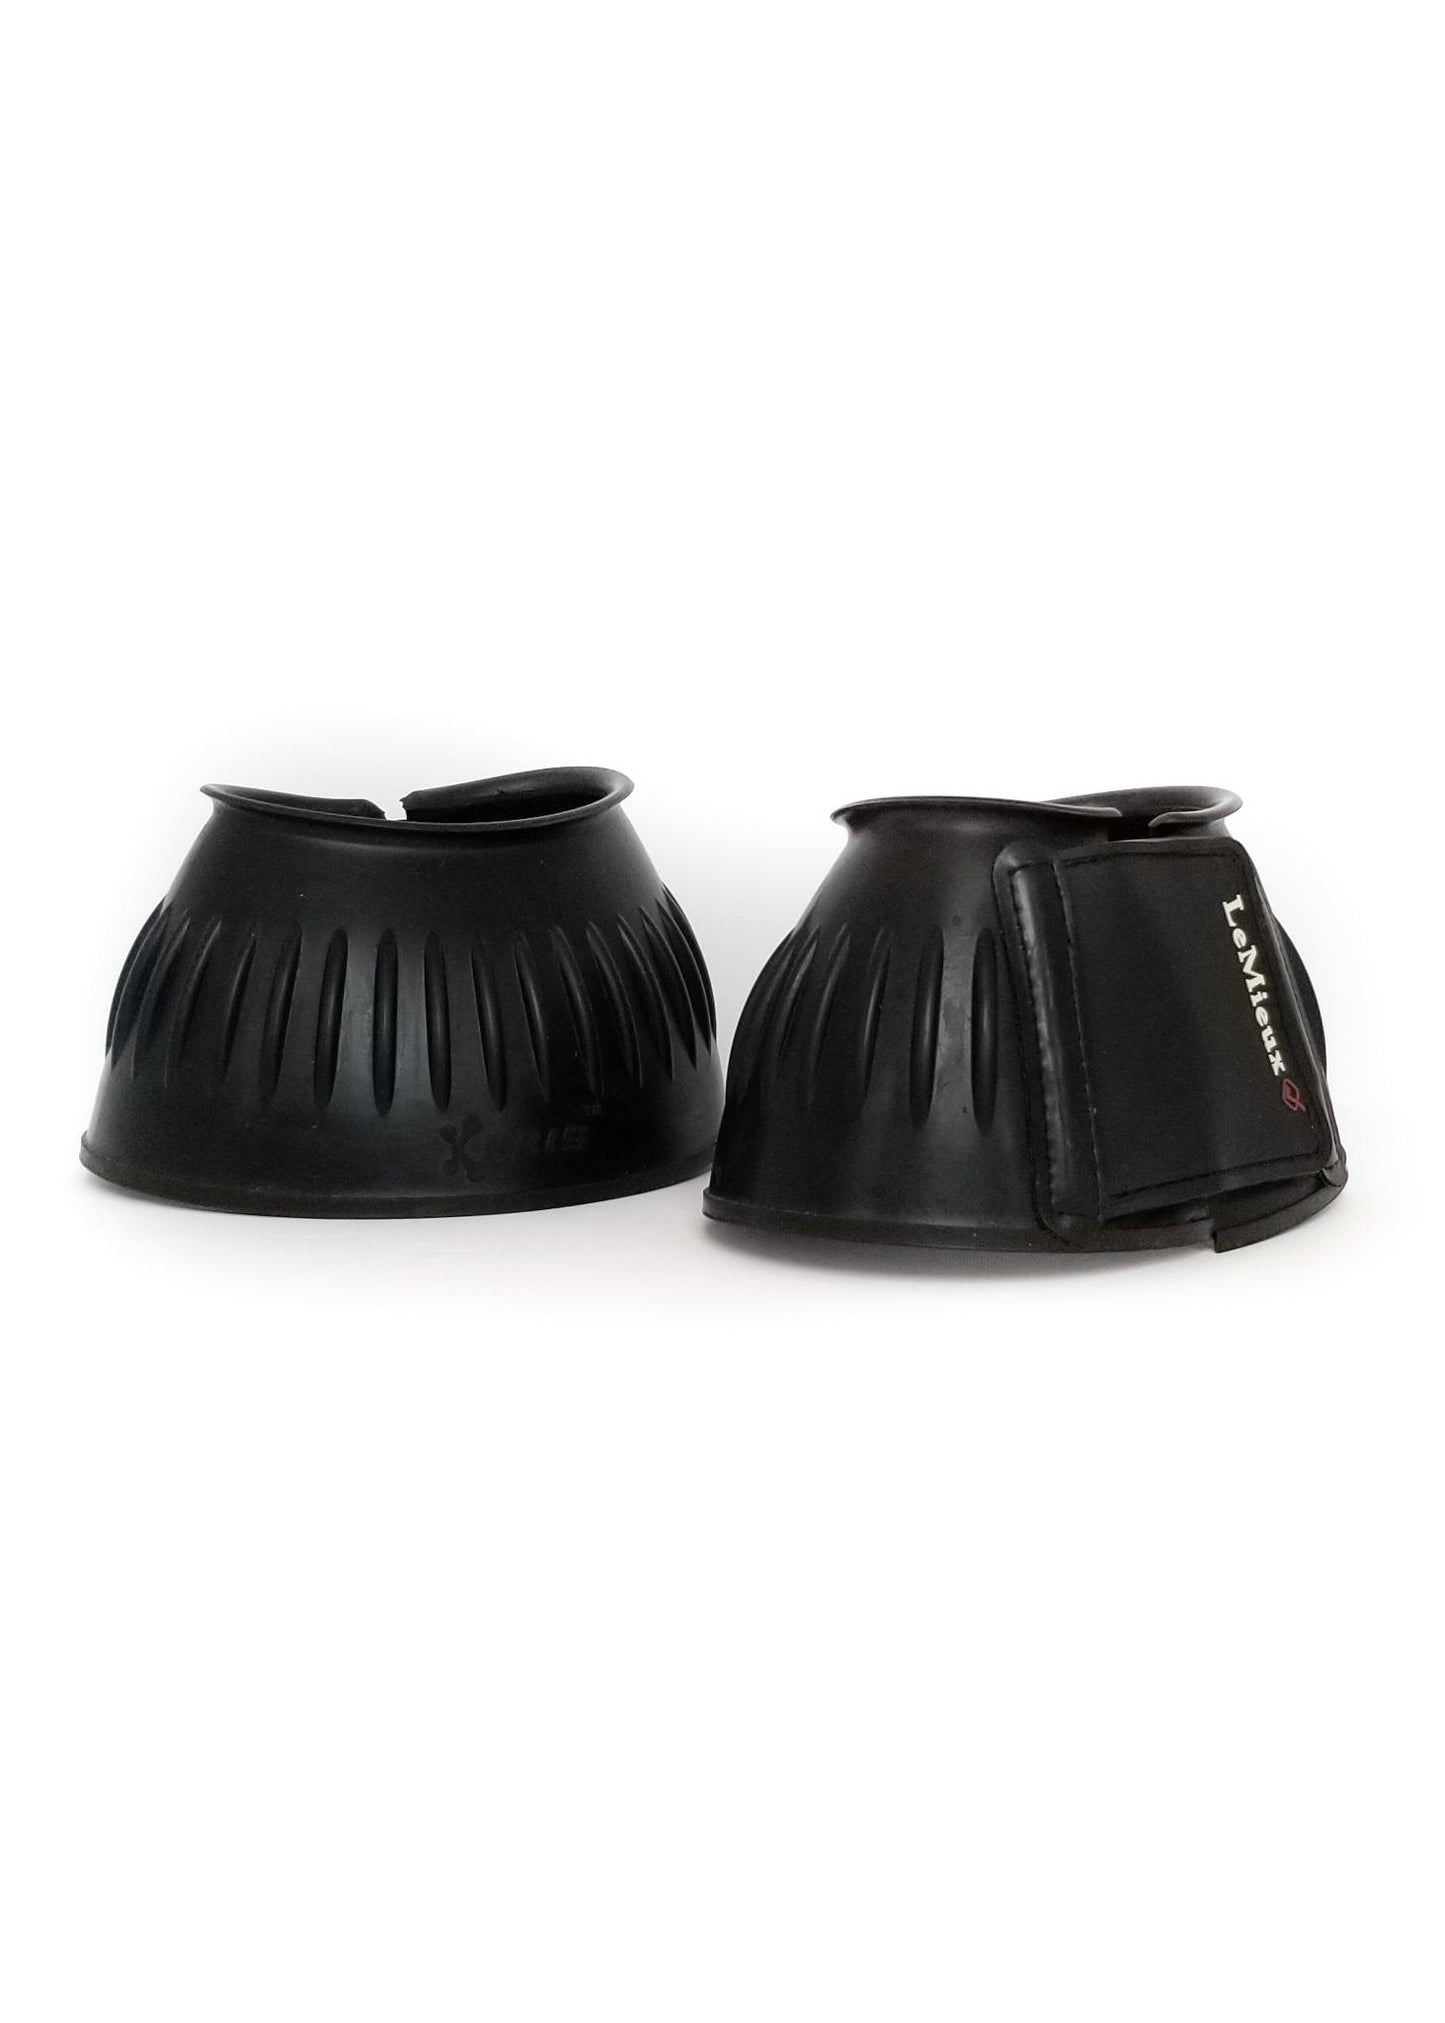 LeMieux Rubber Bell Boots - Black - Large